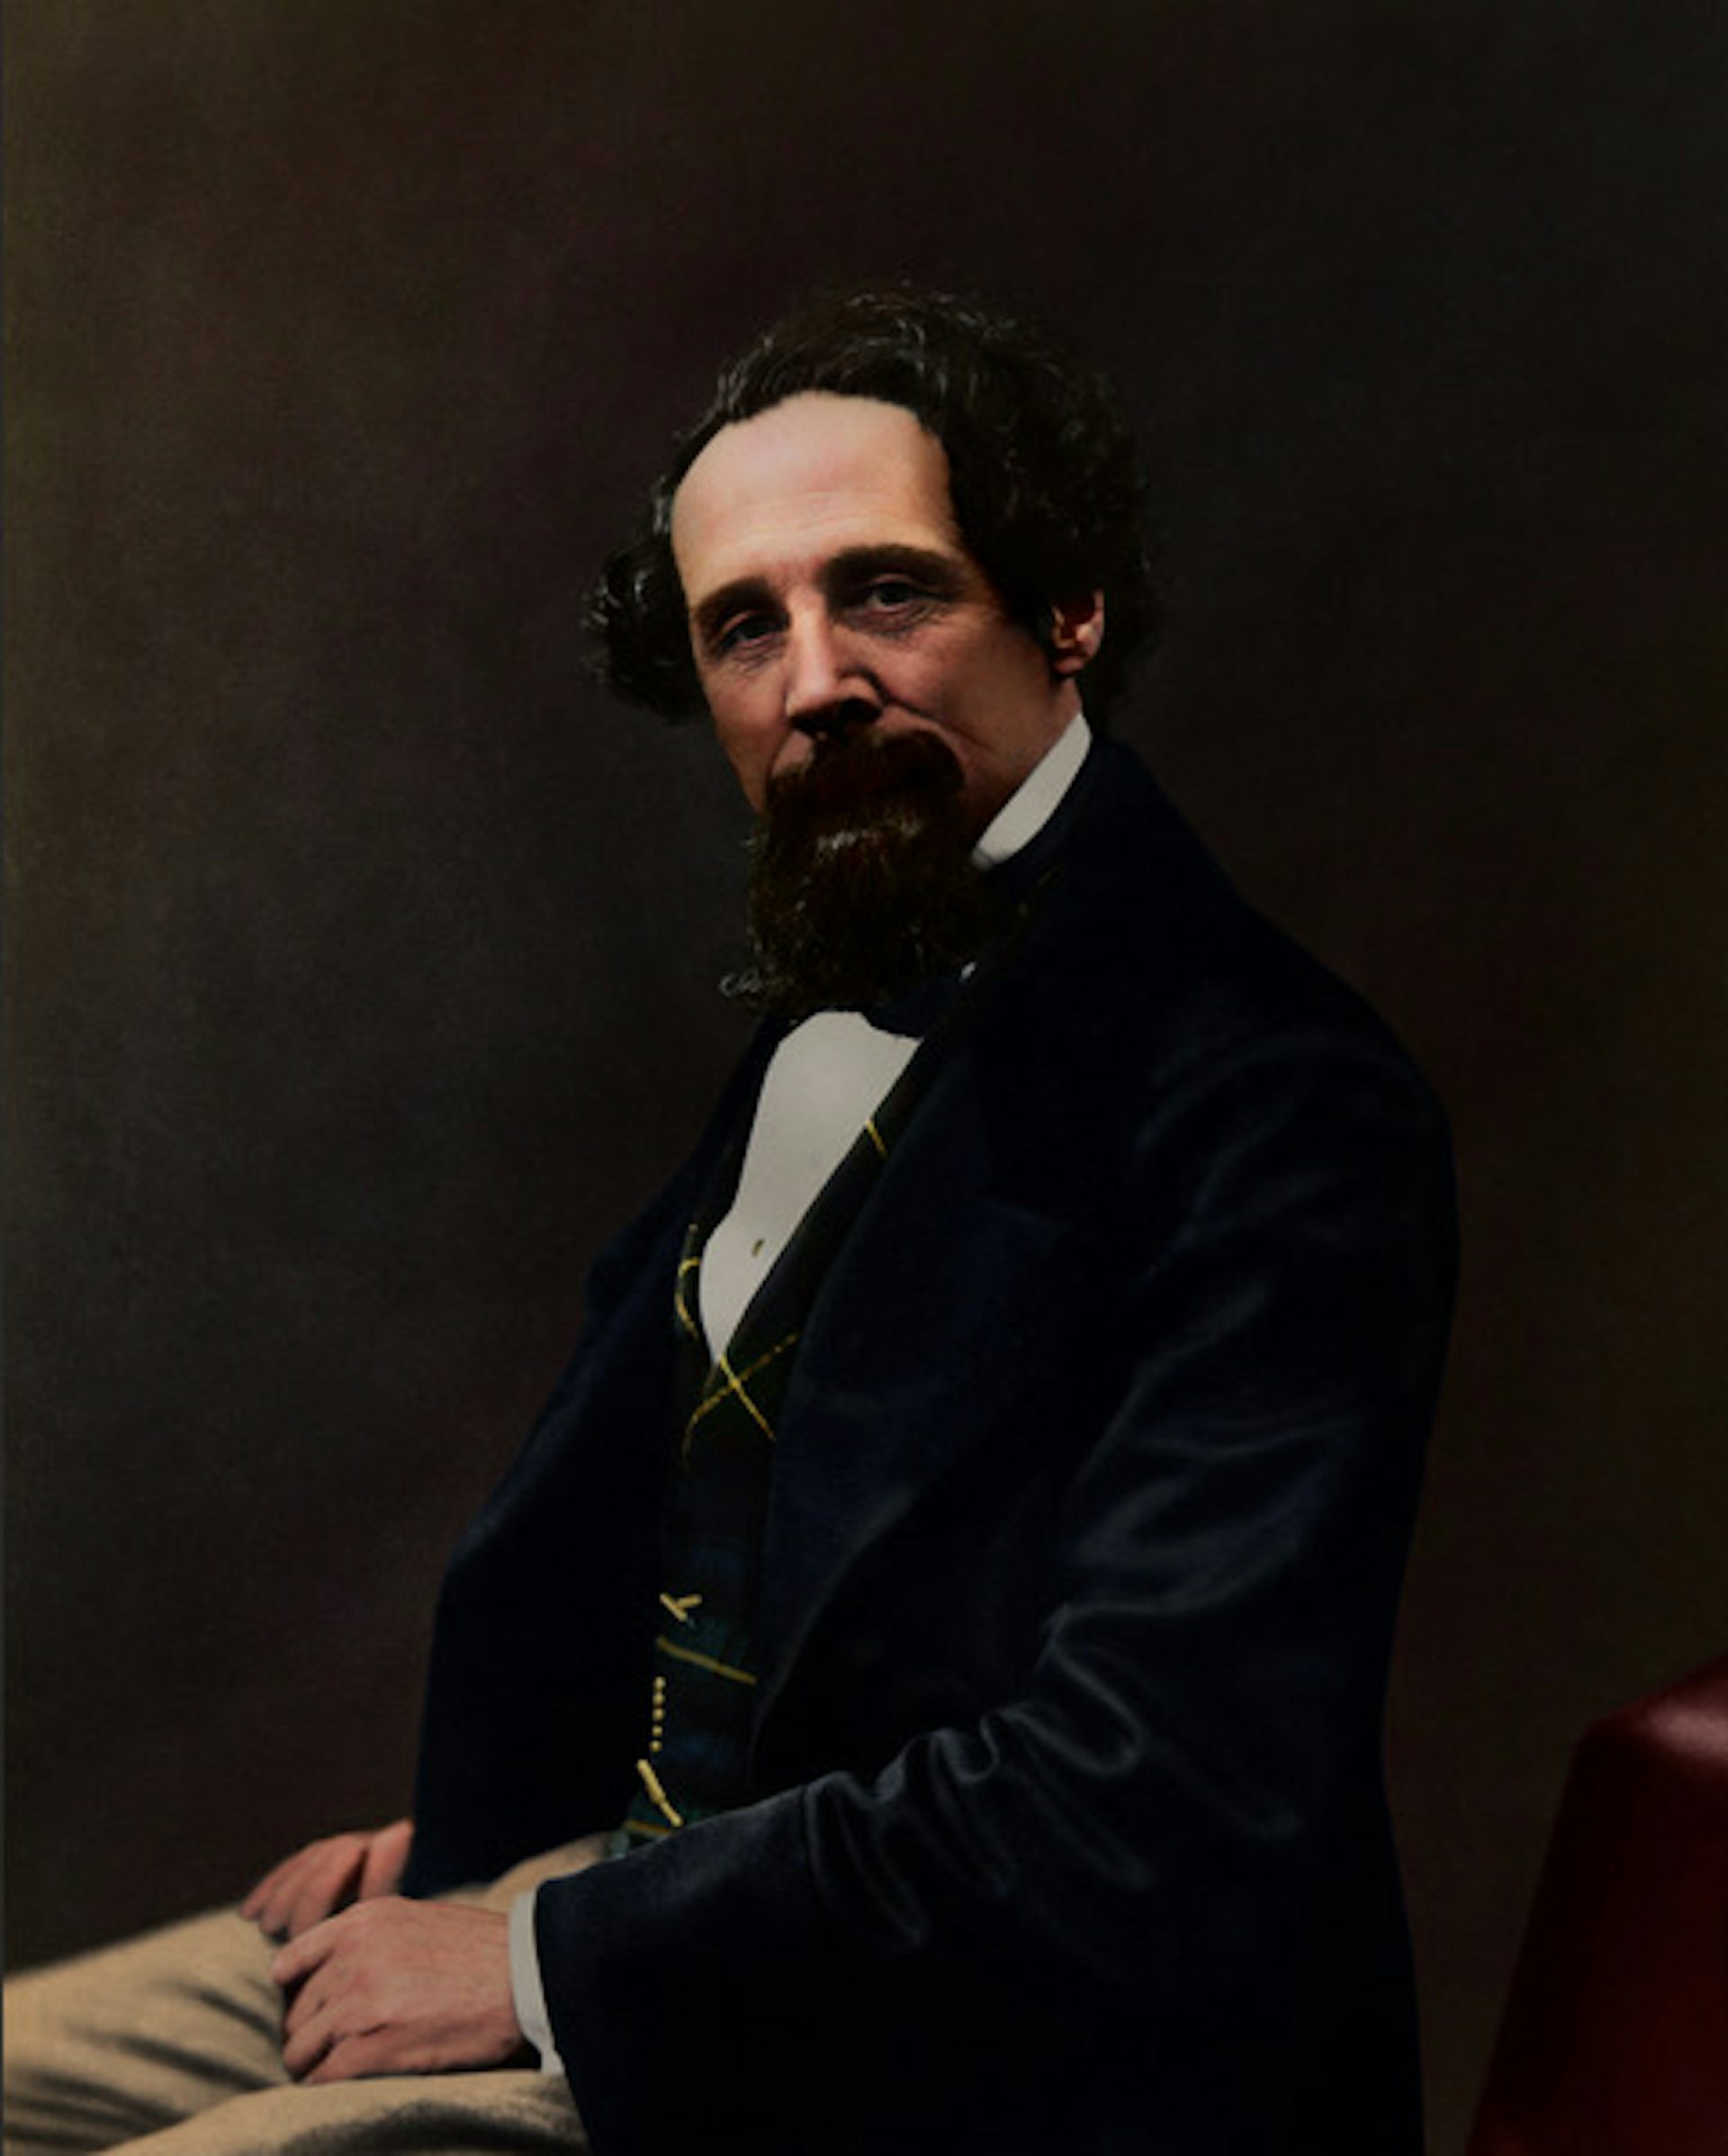 Kleurenportret van Charles Dickens.